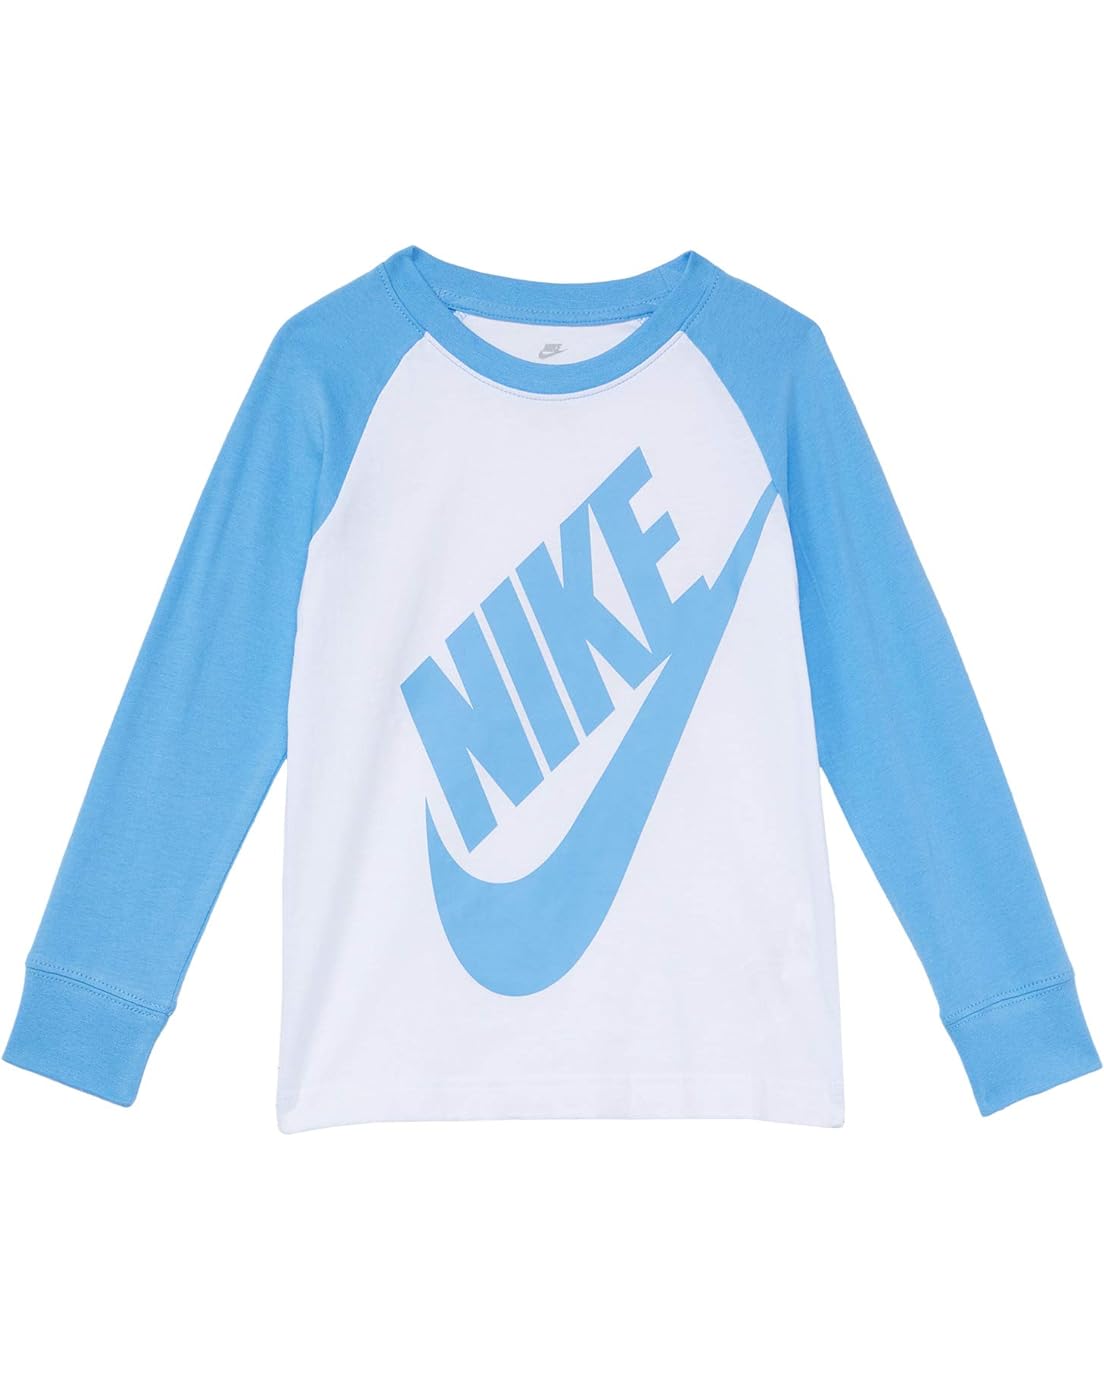 Nike Kids Long Sleeve Raglan Sportswear Graphic T-Shirt (Little Kids)